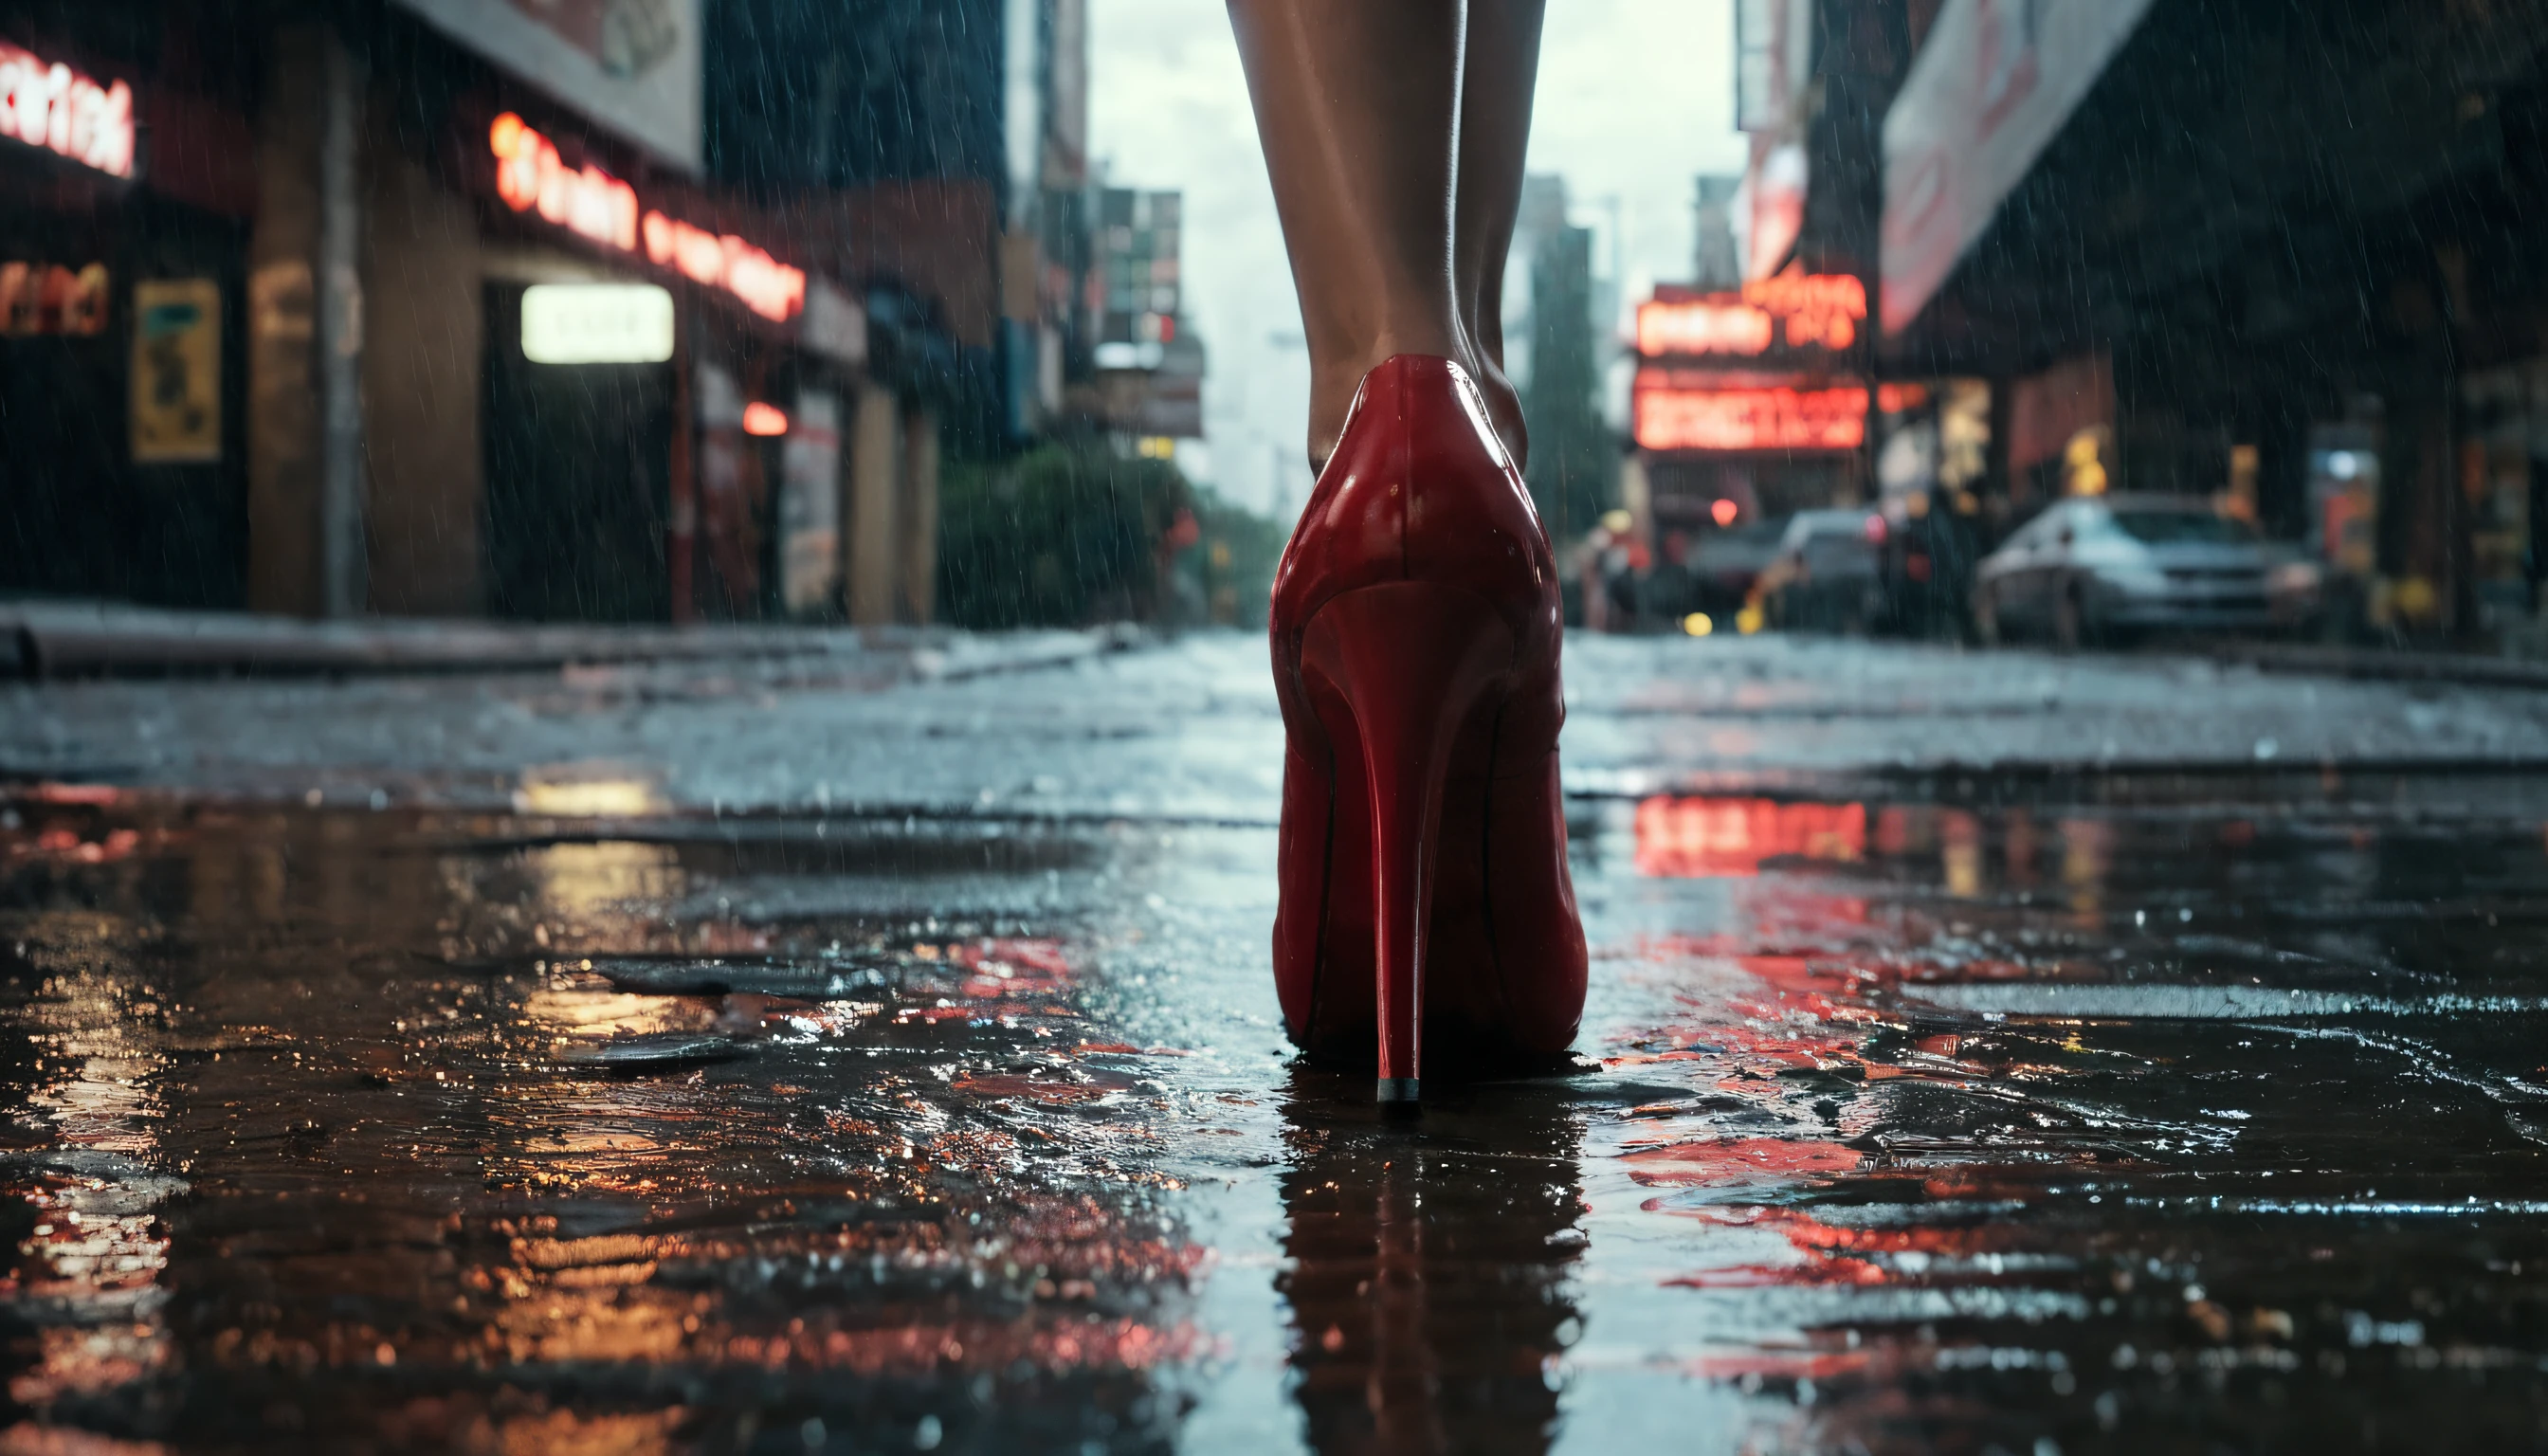 PHOTOGRAPHIE PROFESSIONNELLE PRIMÉE, National géographique, vue sur le sol, rue animée du boulevard Broadway la nuit, drainer la pluie drainante , gros plan d&#39;un paquet de cigarettes blanc vide flottant dans une grille d&#39;égout du centre-ville de New York en 2050 après une nuit pluvieuse, une femme en robe noire portant des chaussures Leboutin à talons rouges marchant sur le drain, , hyper réaliste, cyberpunk, scène cinématographique, Paysage urbain, morose, éclairé au néon, Vue d&#39;en haut la nuit lors de fortes pluies, Rues mouillées réfléchissantes, Photoréaliste, extrêmement bien fait, Arri Alexa LF, Objectif 14mm, stries légères, DOF, Fusées d&#39;objectif, 8k, HDR, éclairage volumétrique, Fusées d&#39;objectif,détails complexes, BRUT